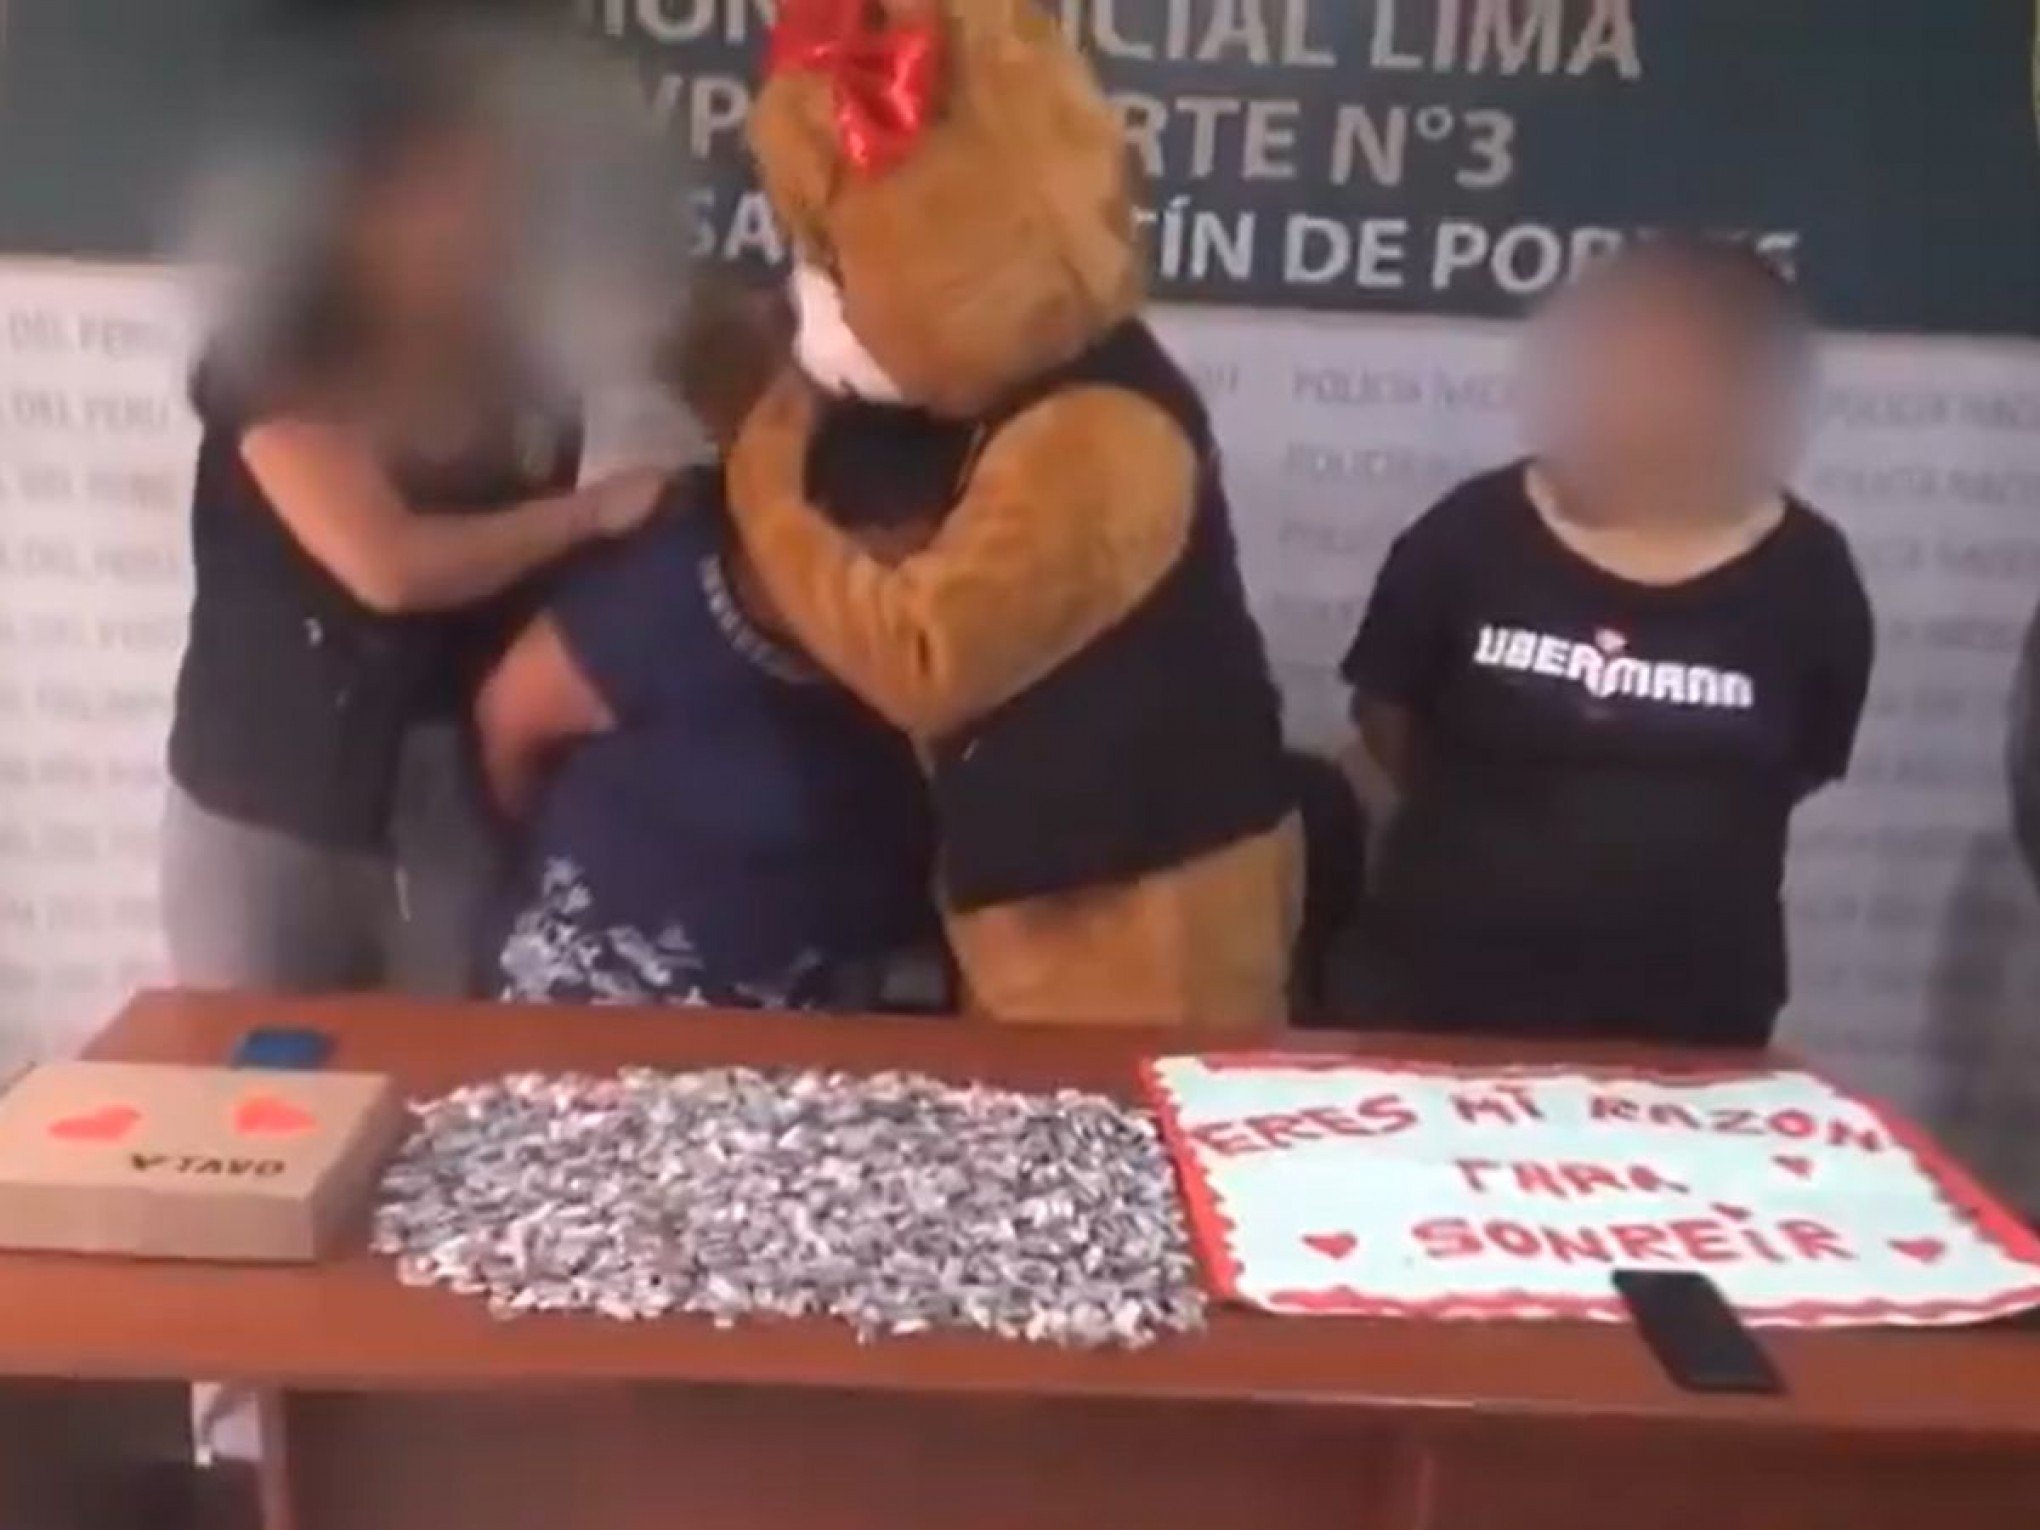 VÍDEO: Polícia se disfarça de urso no Dia dos Namorados e faz "surpresa romântica" para prender traficantes